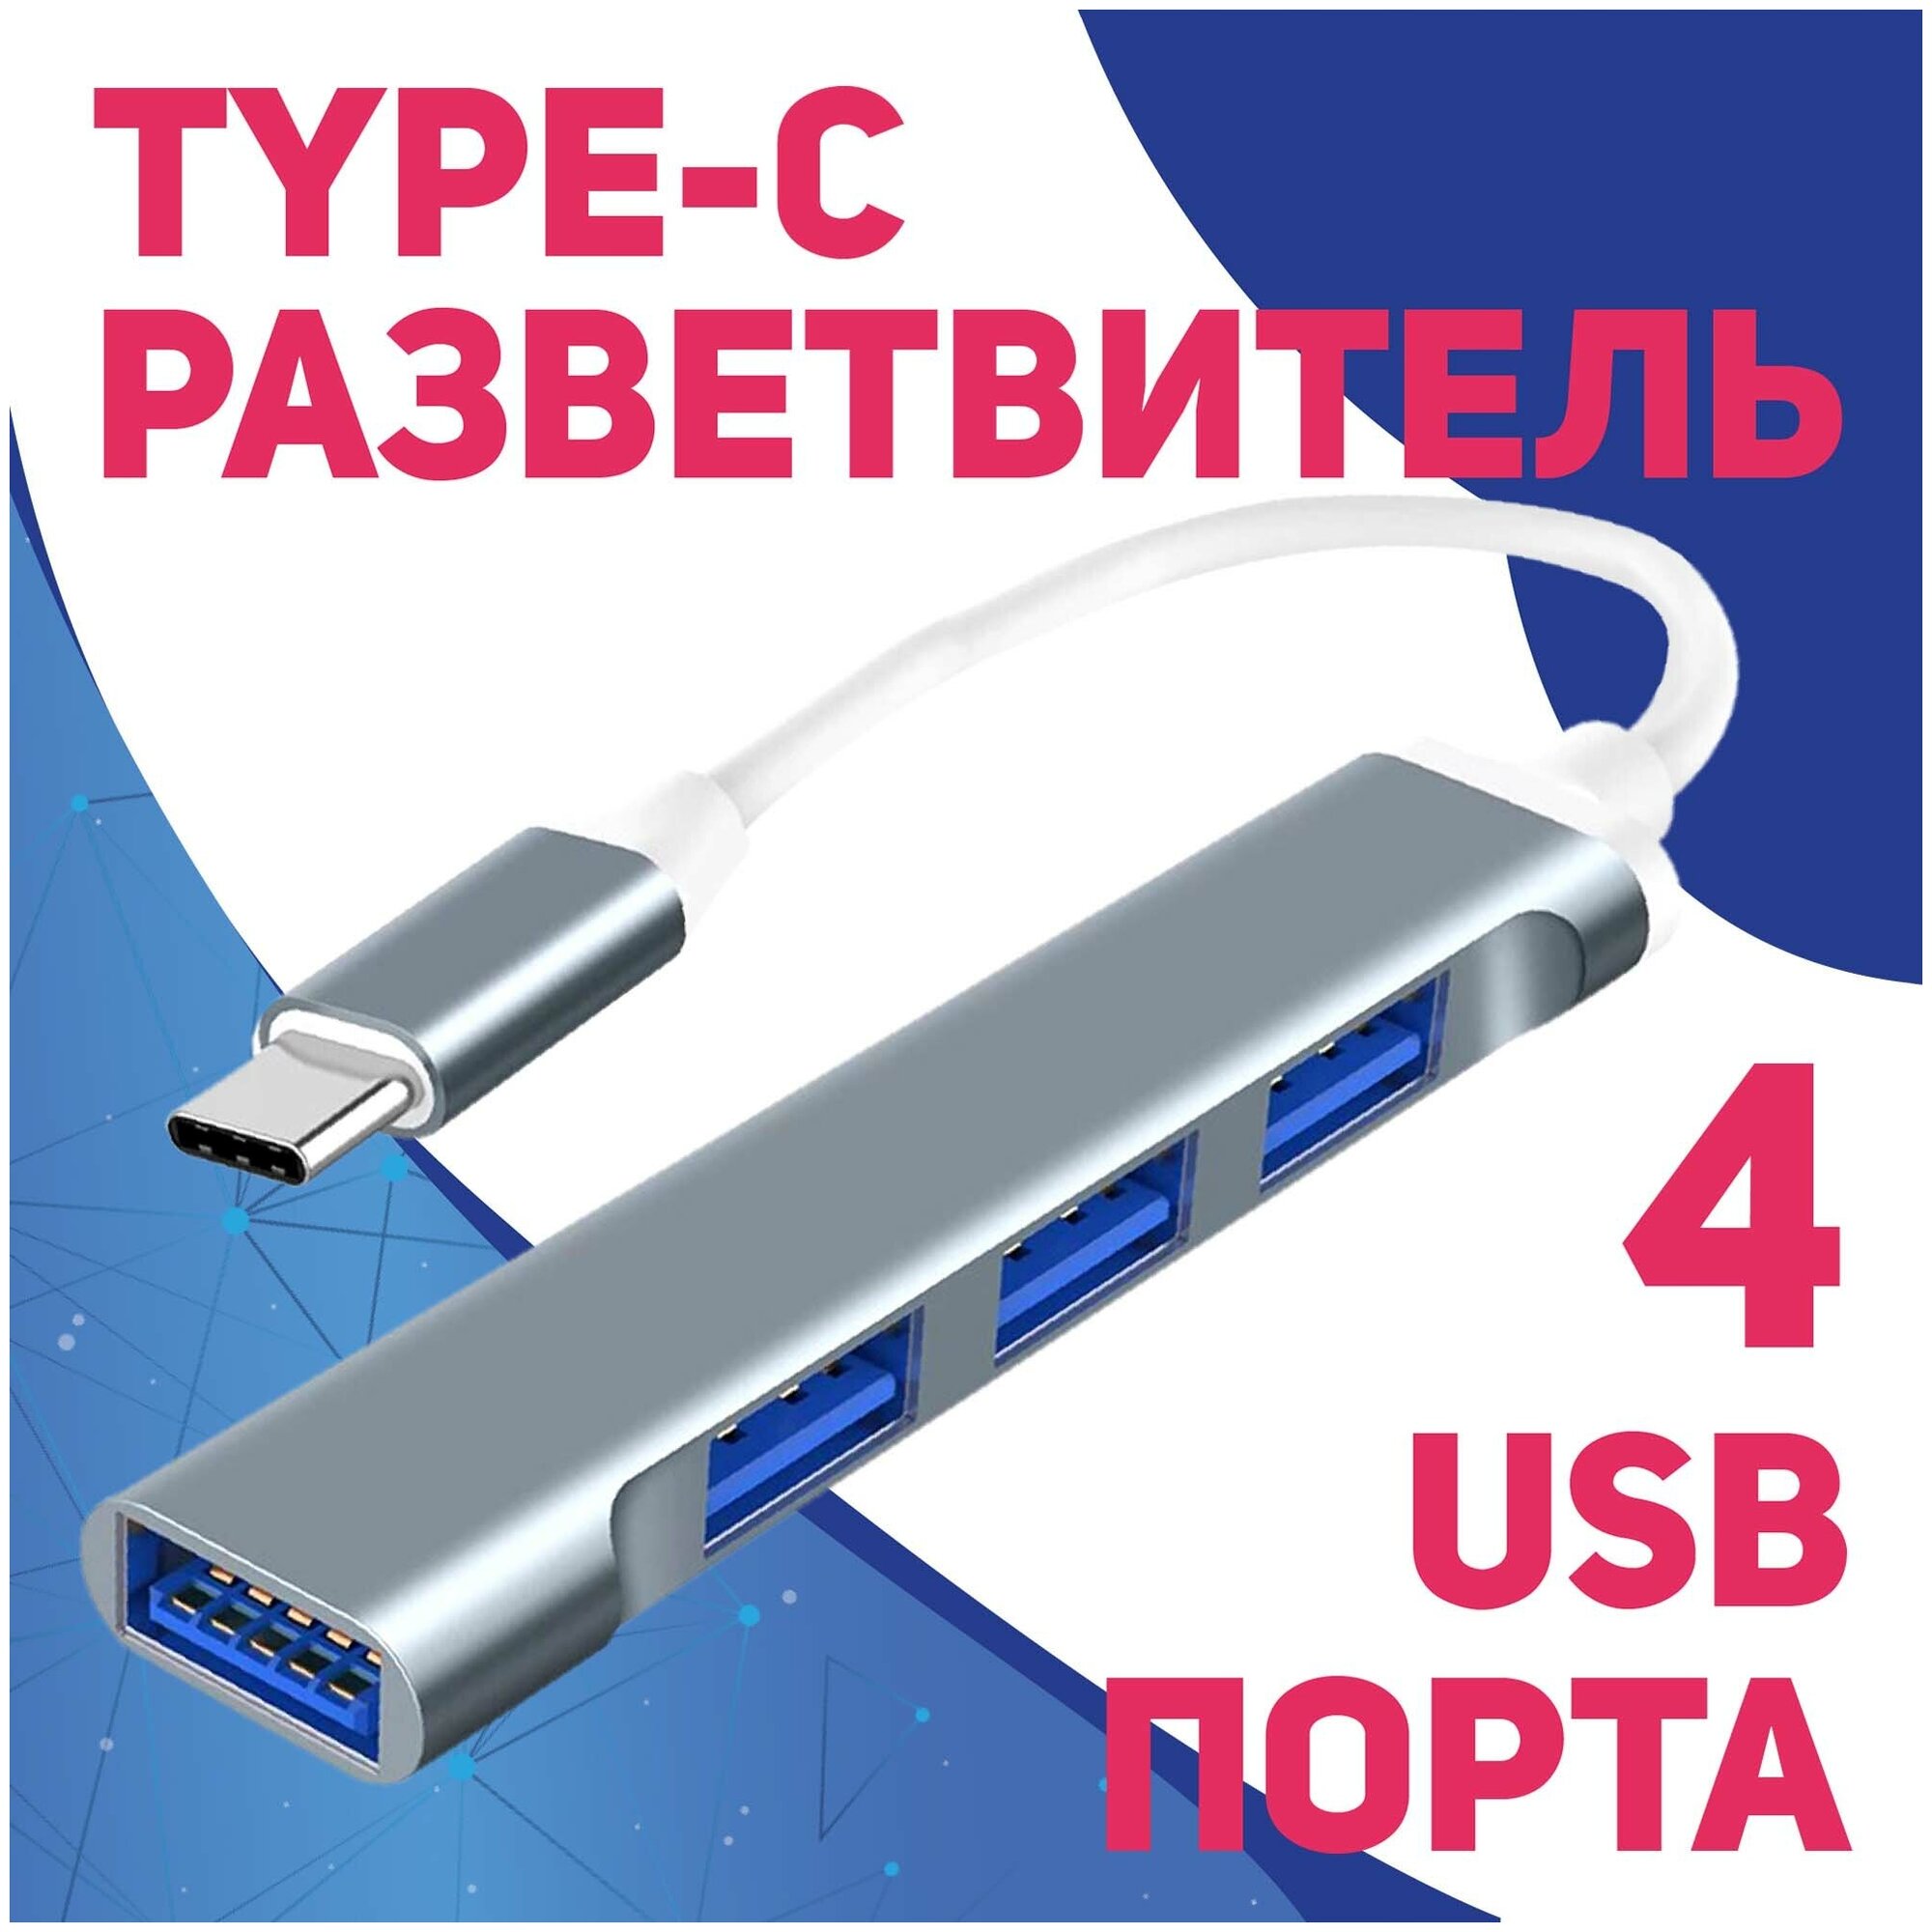 Разветвитель / HUB / концентратор OTG (On-The-Go) USB type-C to USB 3.0 x4 для ноутбуков ультрабуков планшетов игровых консолей и смартфонов.